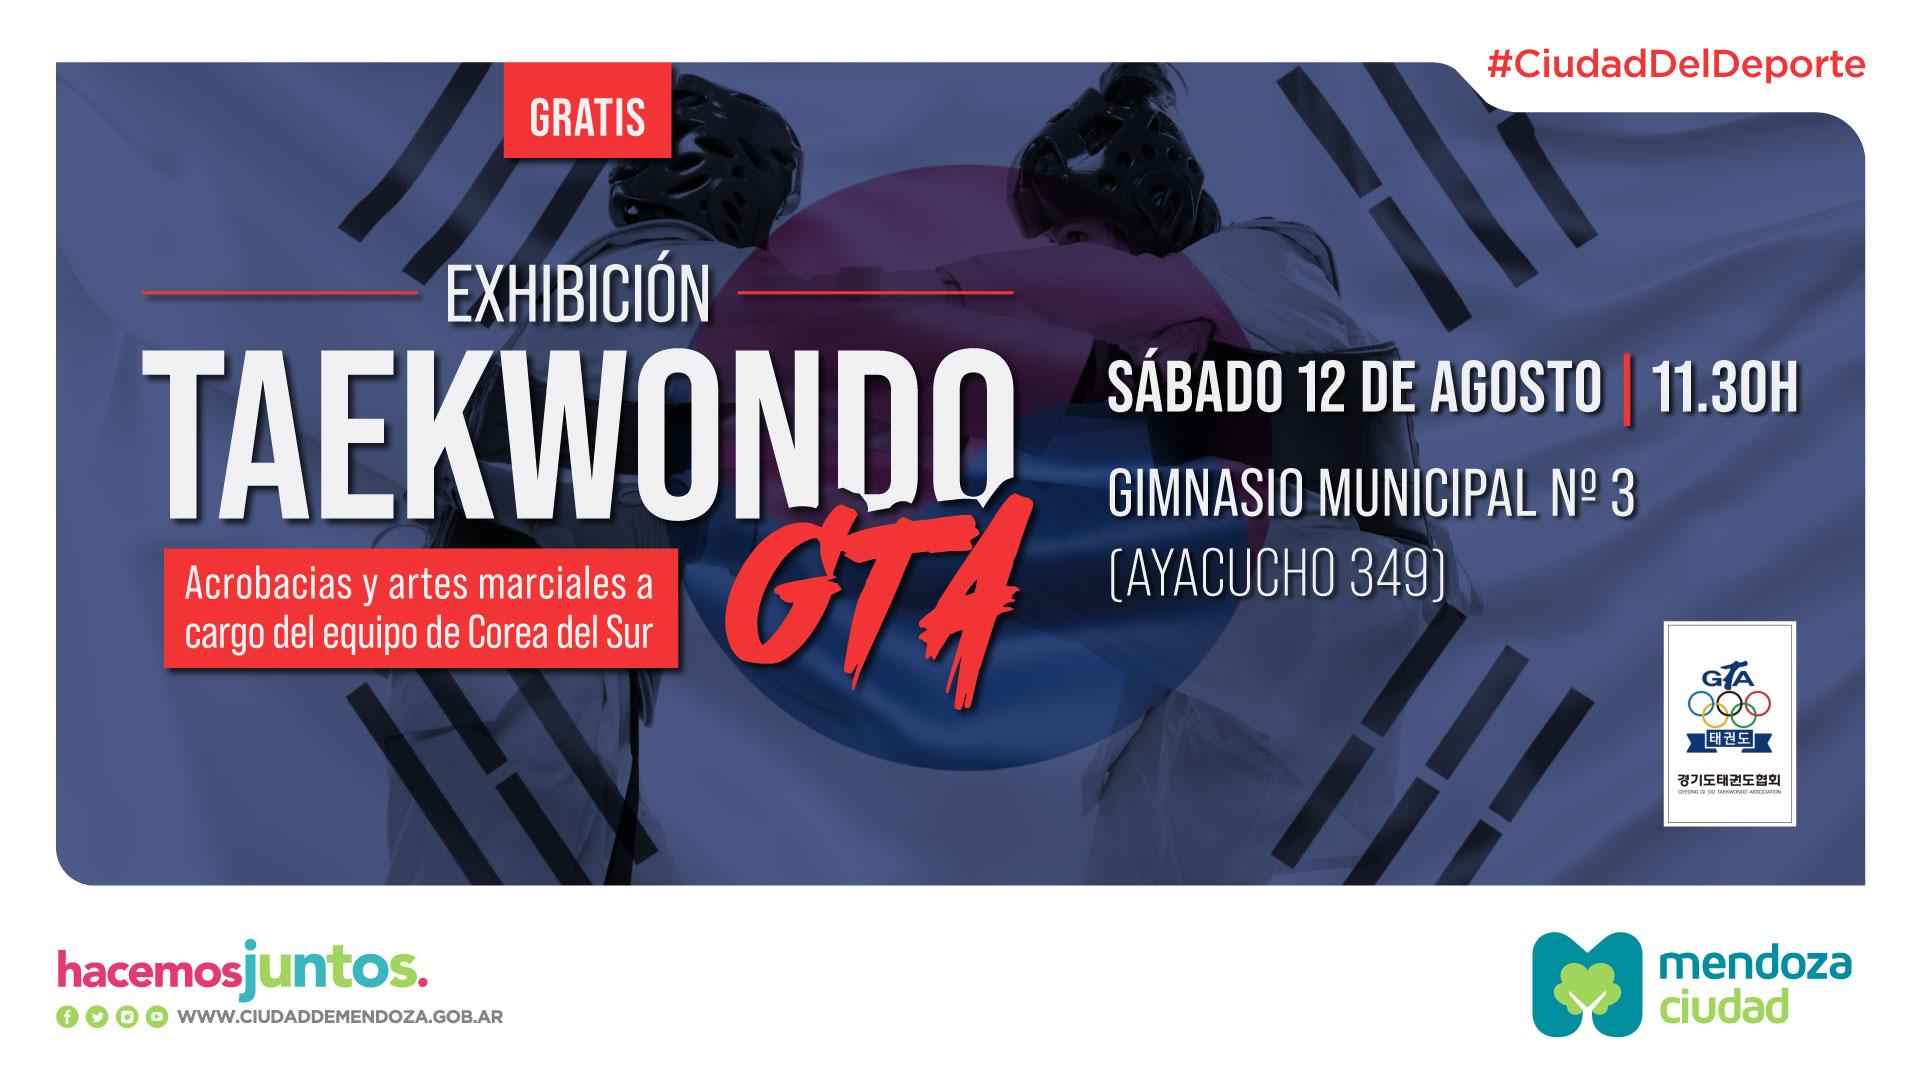 Taekwondo GTA Ciudad Mendoza Exhibición